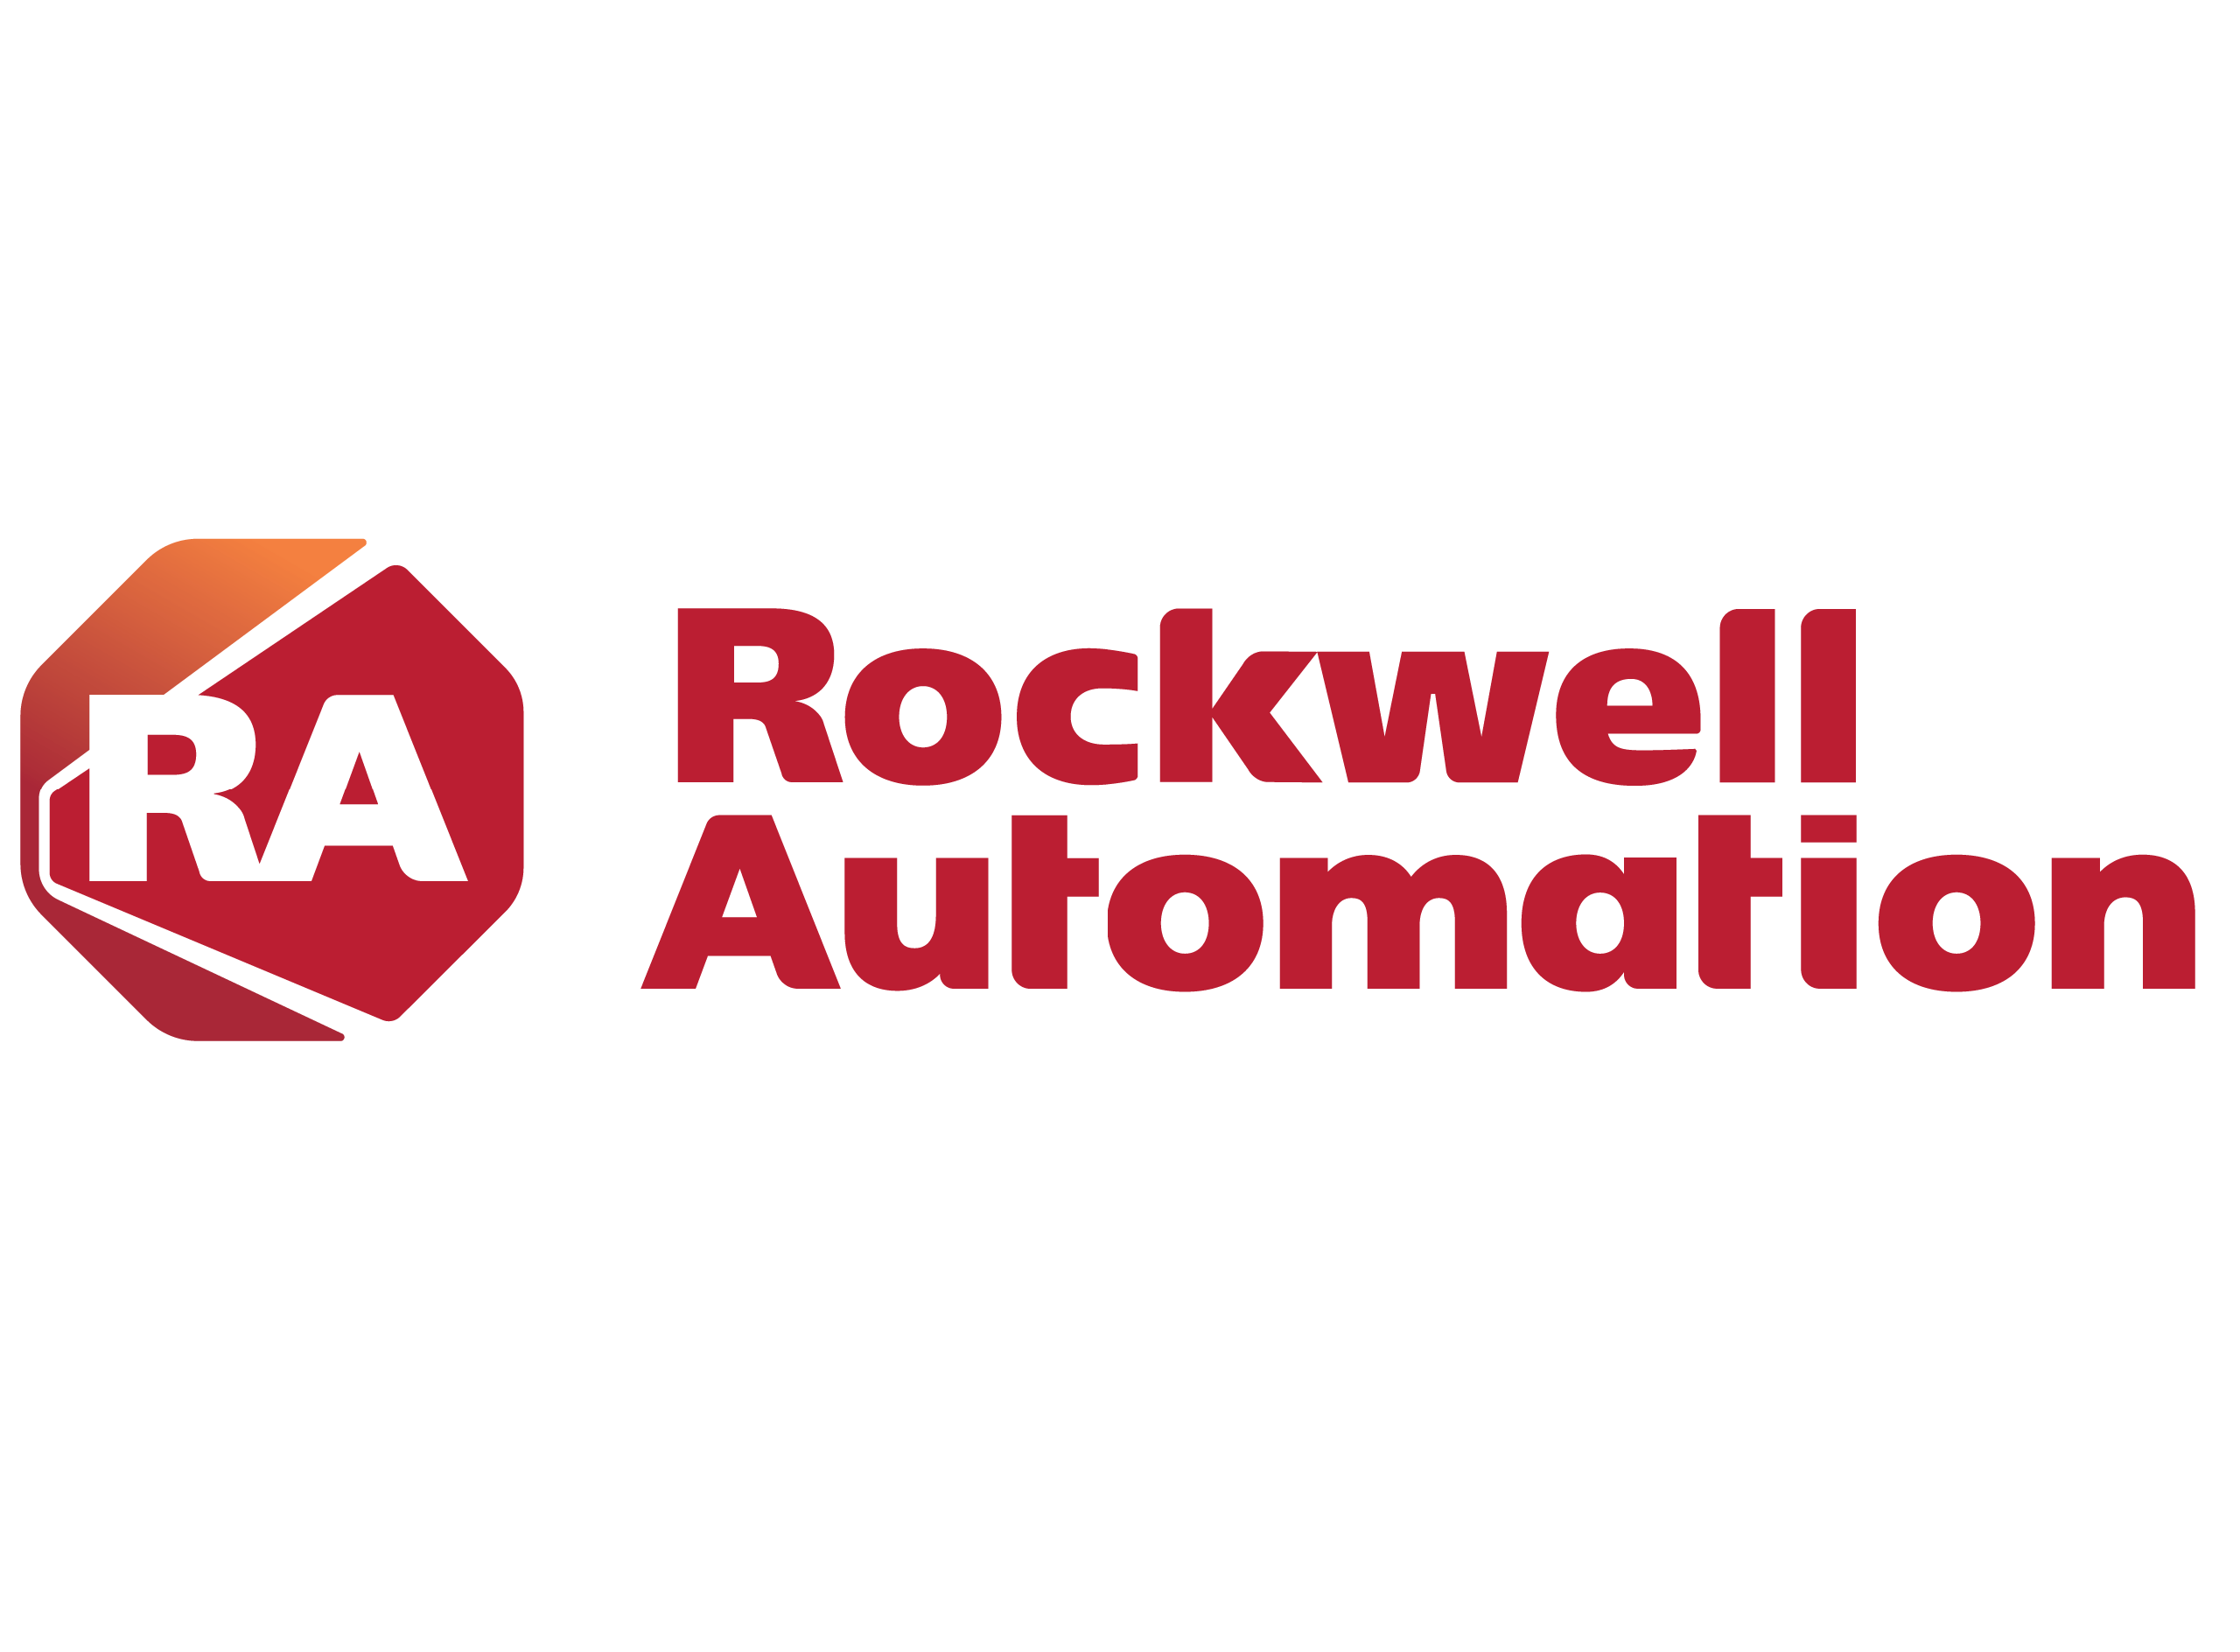 impreza integracyjna dla Rockwell Automotion, pikniki firmowe, imprezy, eventy, piknik rodzinny.png